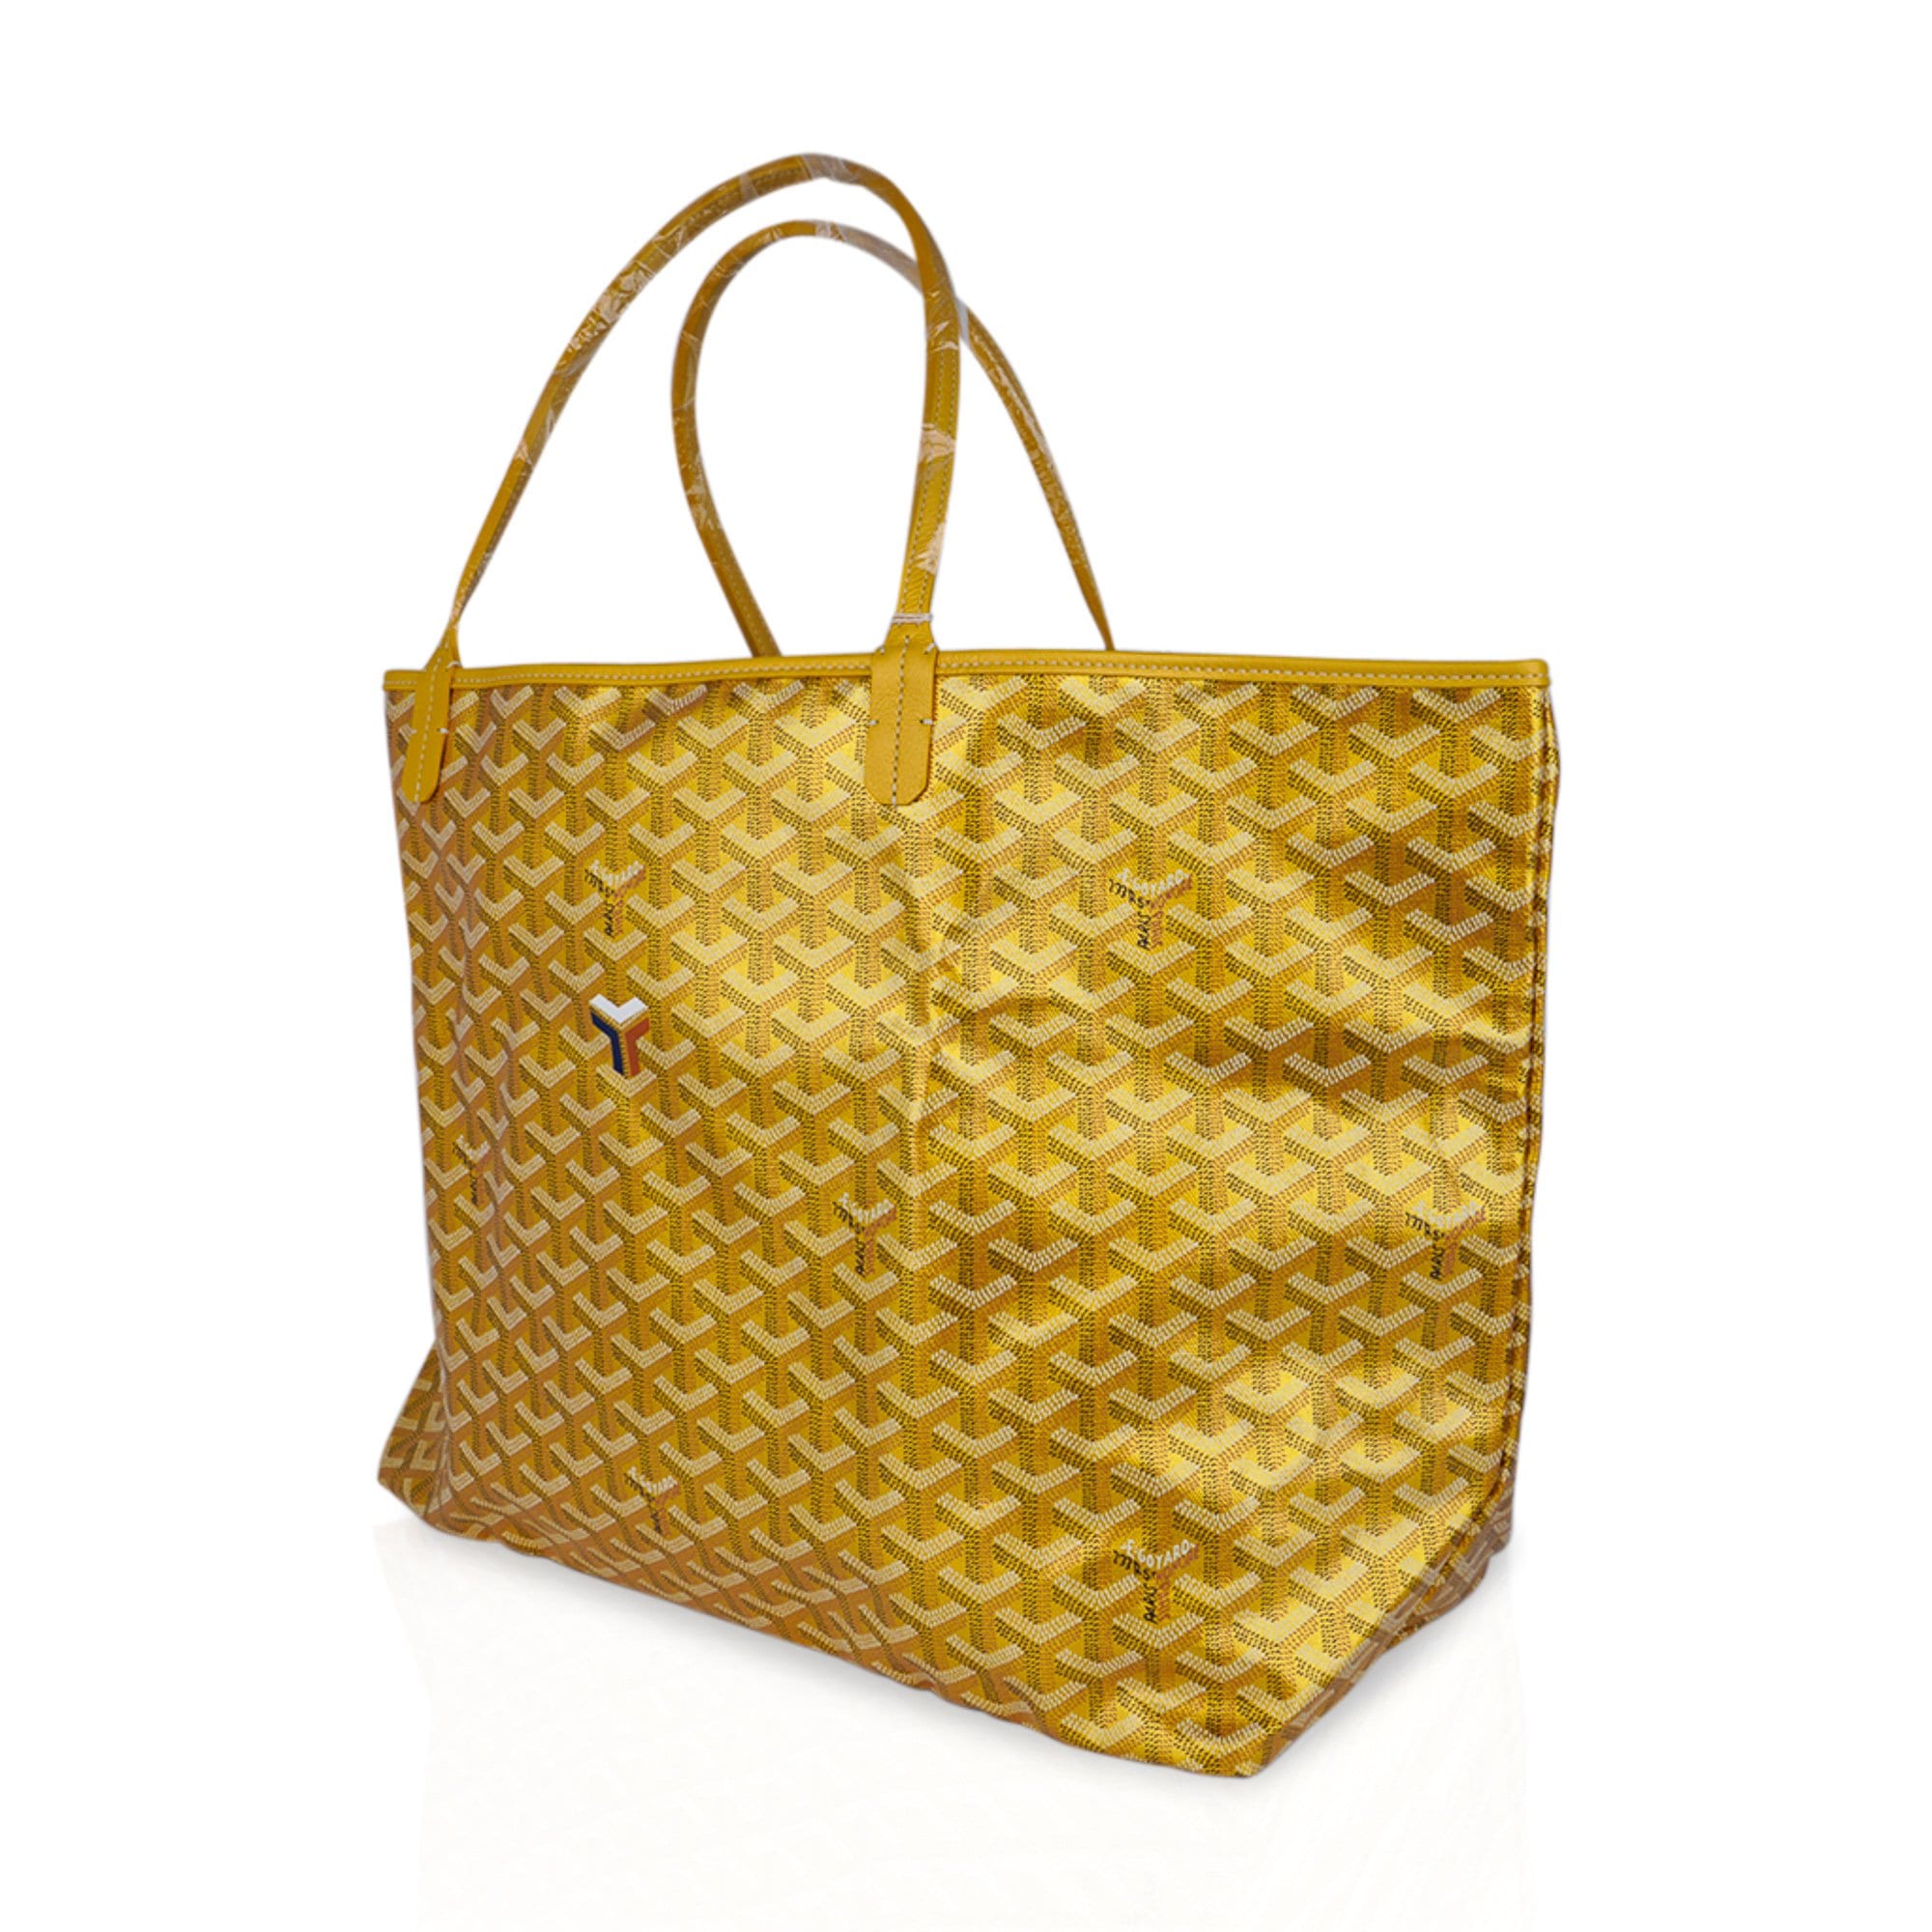 Goyard, Bags, Goyard Limited Edition Rose Metallic Gm Tote Bag Nwt